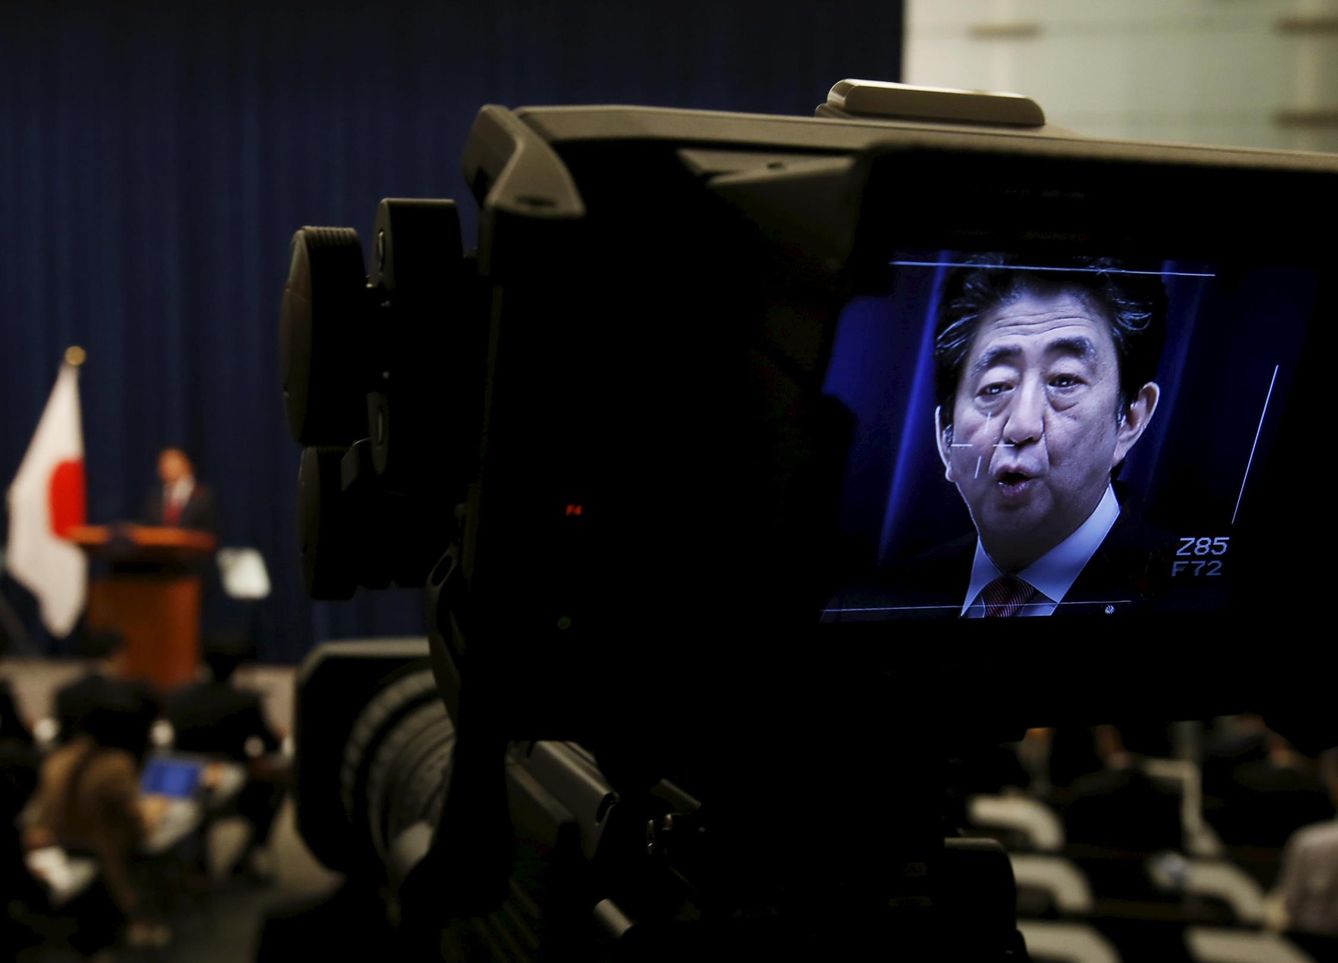 Una cámara muestra la imagen del primer ministro japonés durante una conferencia en Tokio. (Reuters)